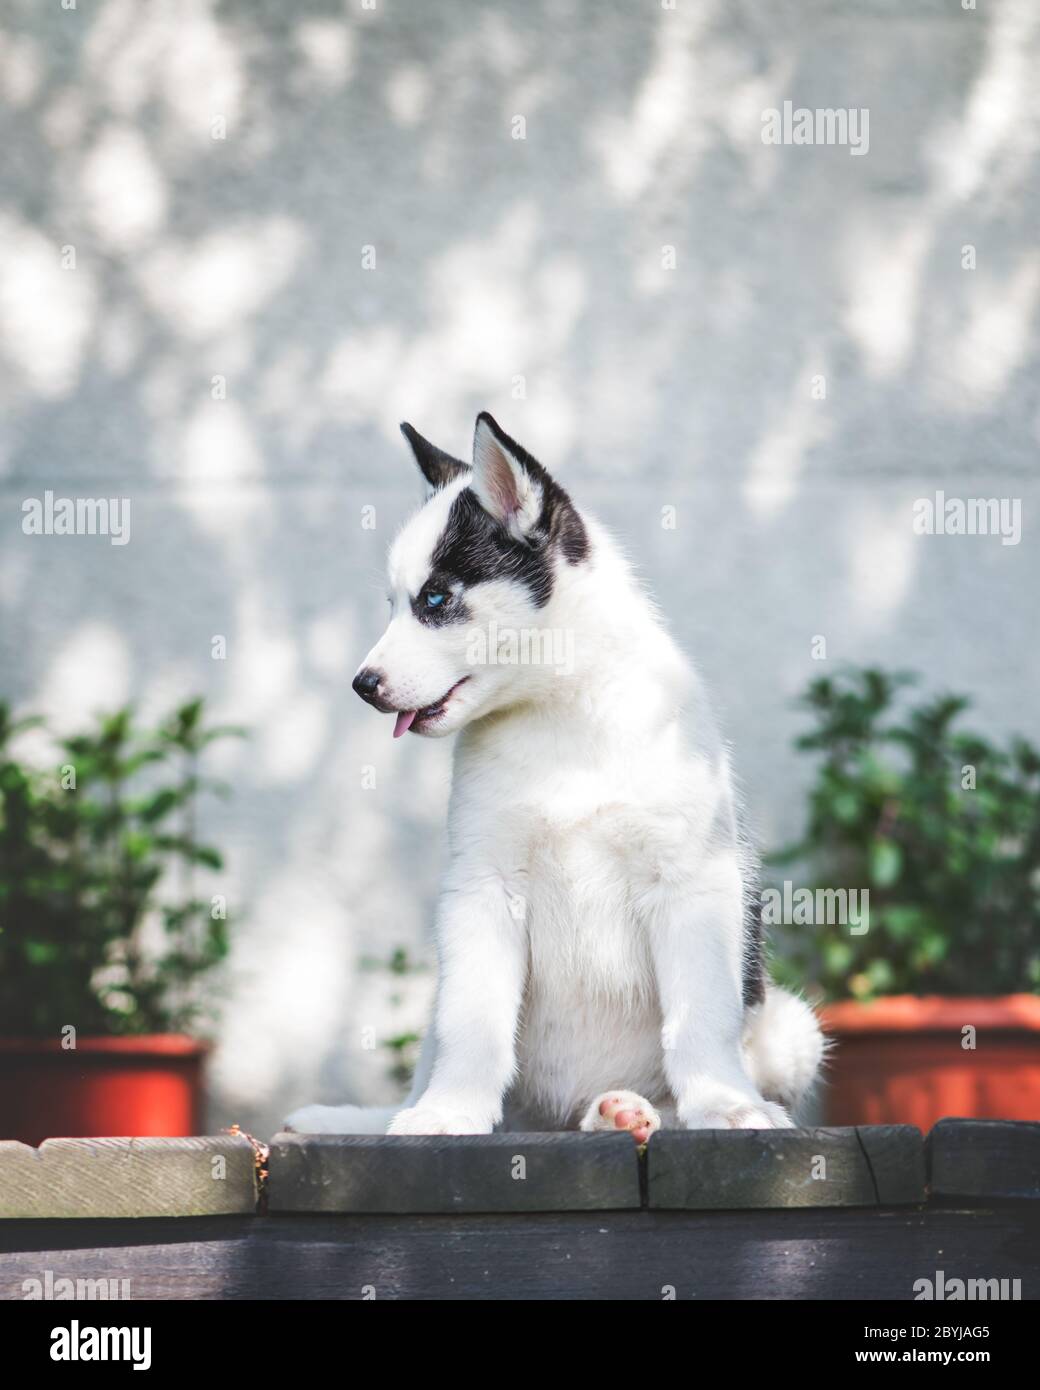 Un piccolo cucciolo di cane bianco razza Husky siberiano con bei occhi blu su terrazza di legno. Fotografia di cani e animali domestici Foto Stock